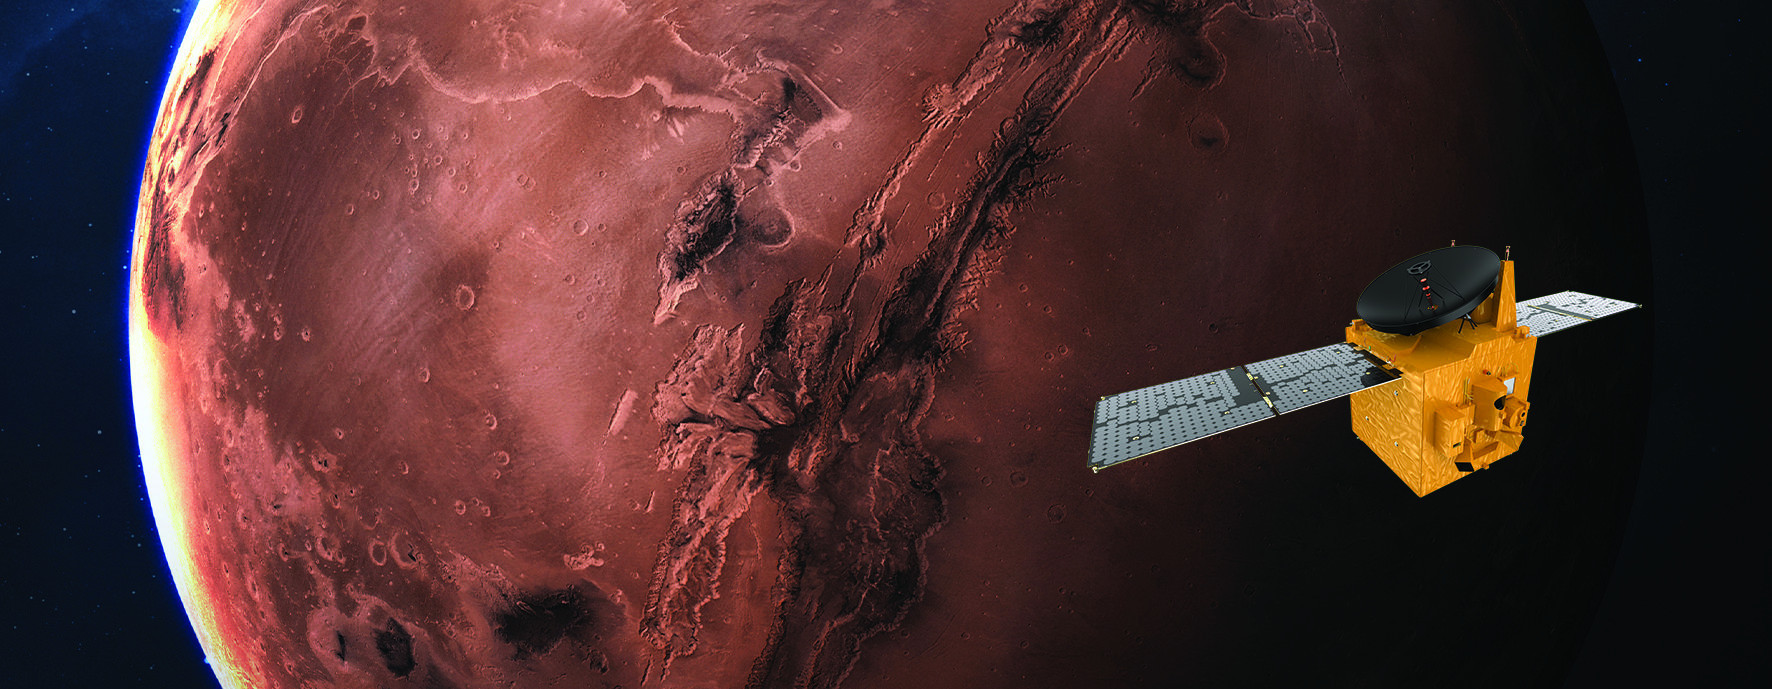 화성 궤도에 진입한 UAE 화성 탐사선 ‘알 아말’의 가상도. UAE 우주청 제공